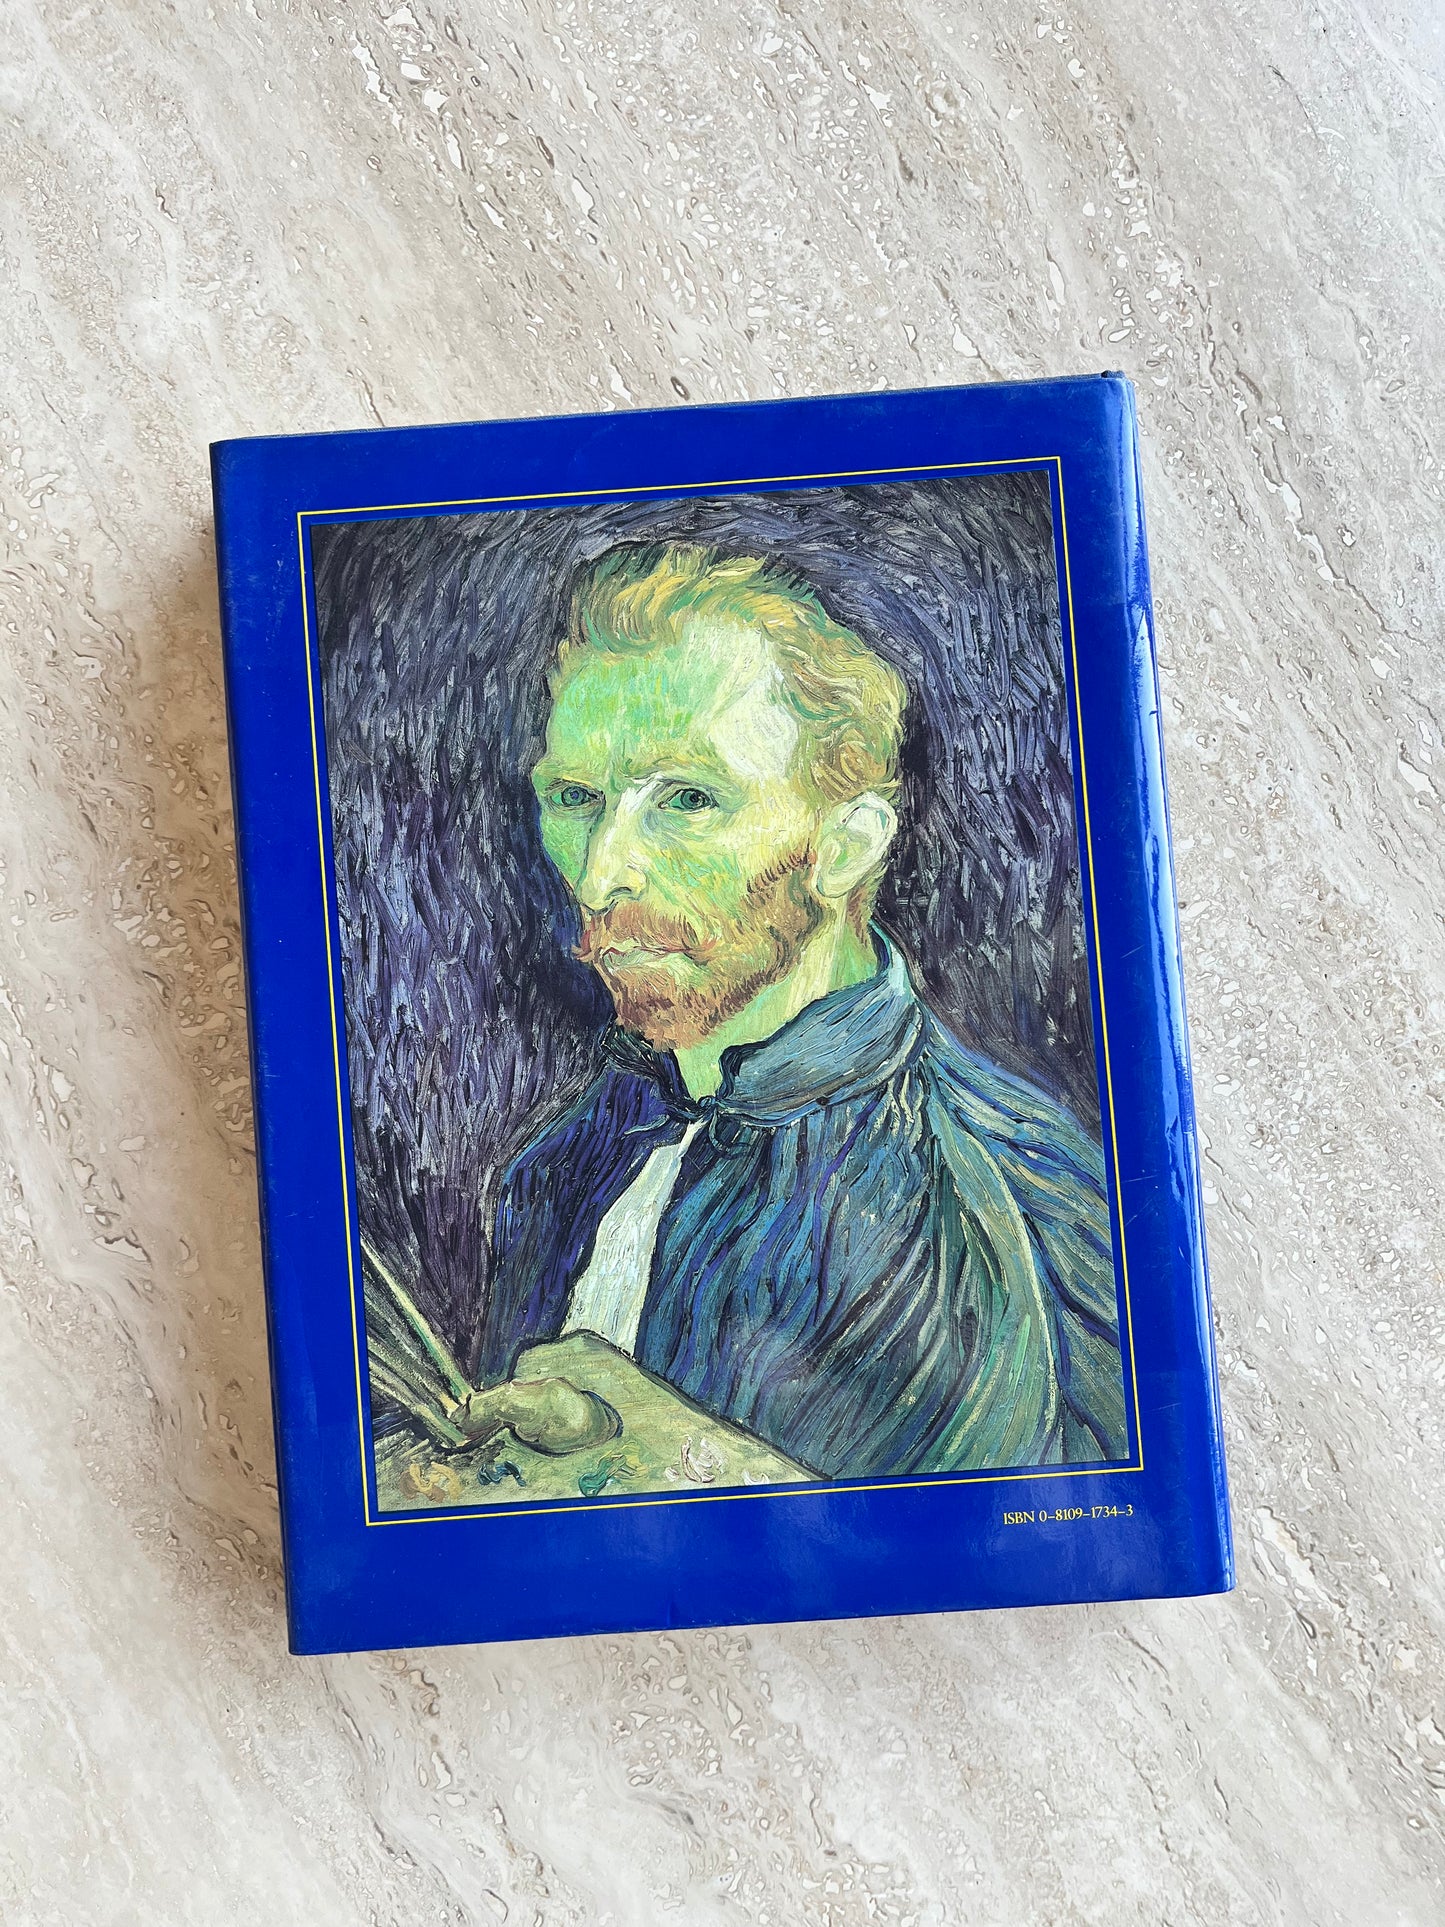 Van Gogh in Saint-Rémy and Auvers